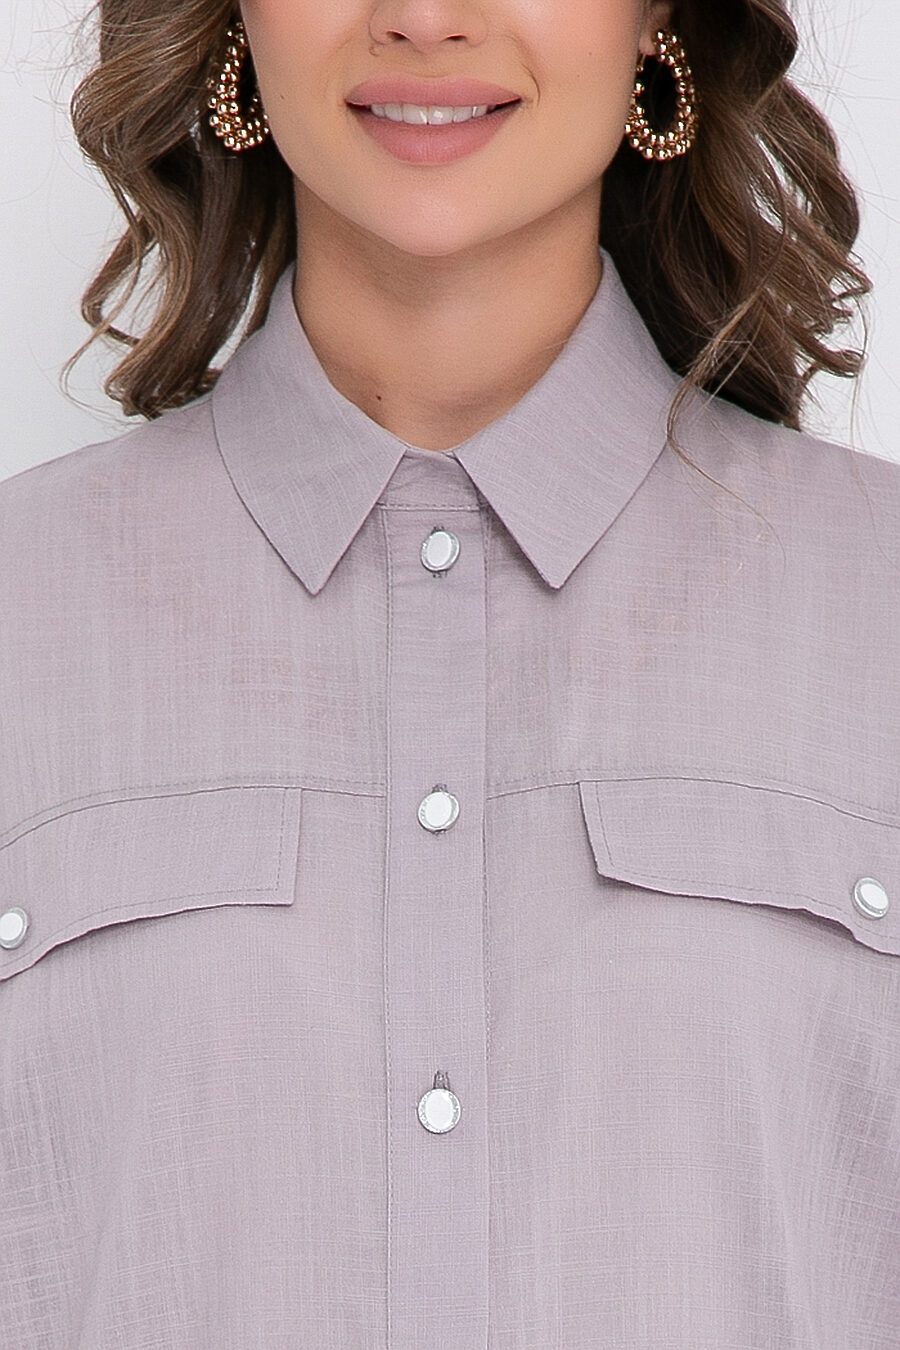 Рубашка BELLOVERA (683558), купить в Moyo.moda